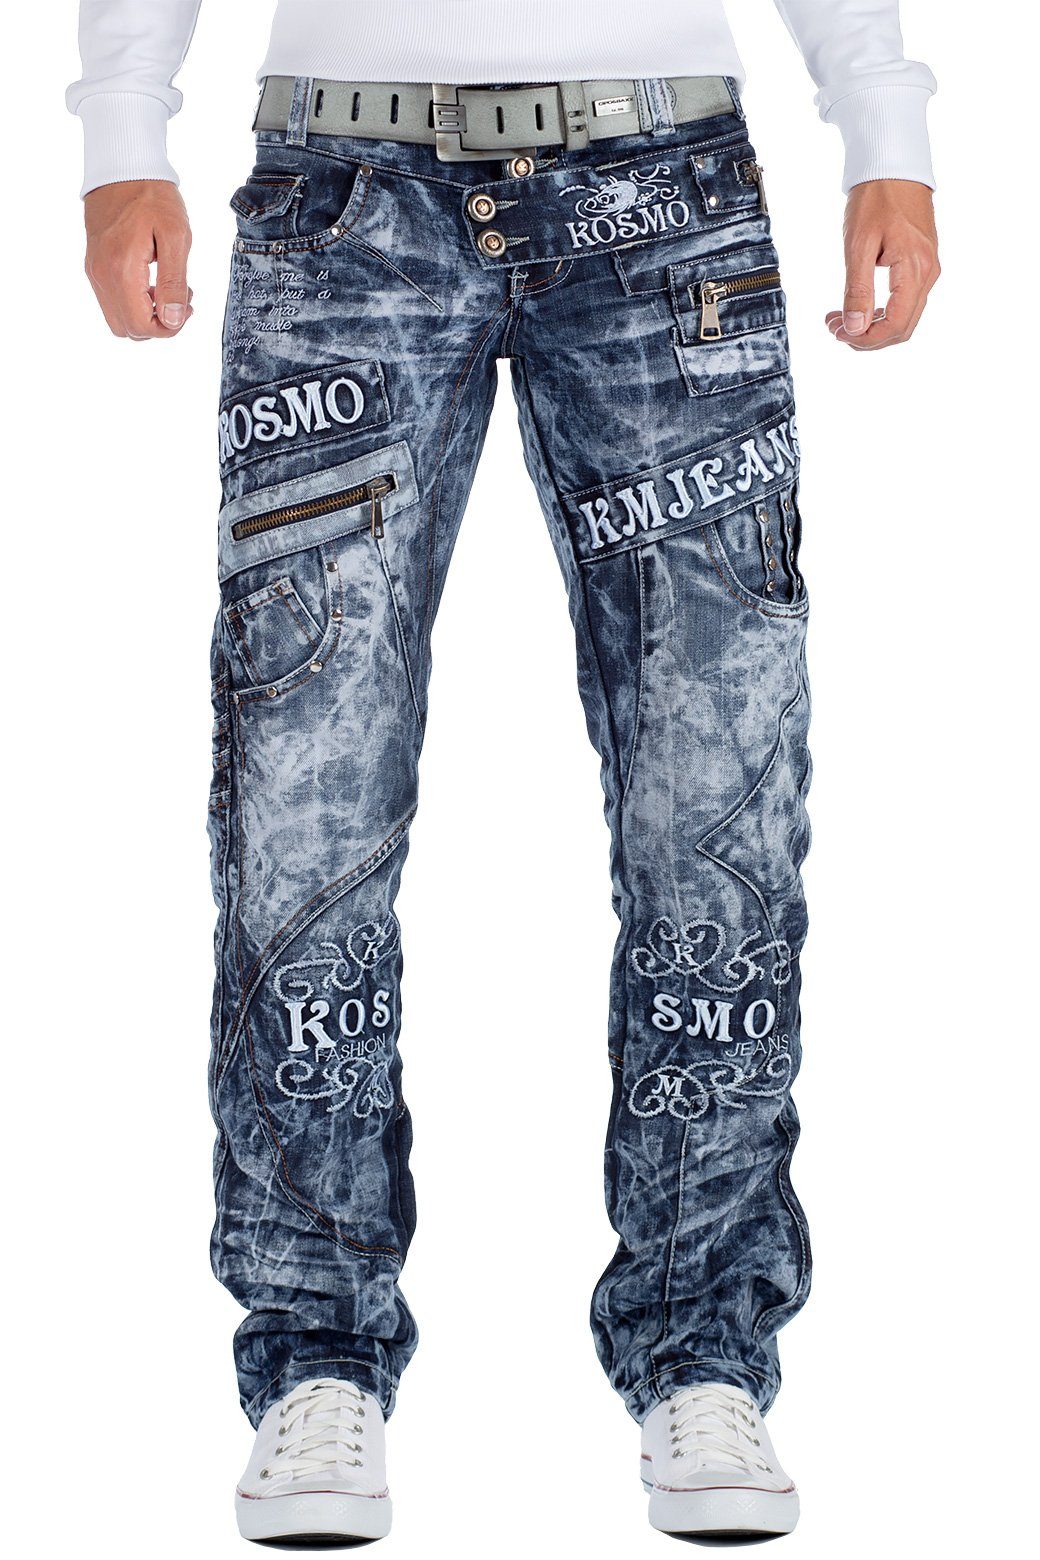 Kosmo Lupo 5-Pocket-Jeans Auffällige Herren Hose BA-KM051 Markante Waschnung und Verzierungen blau